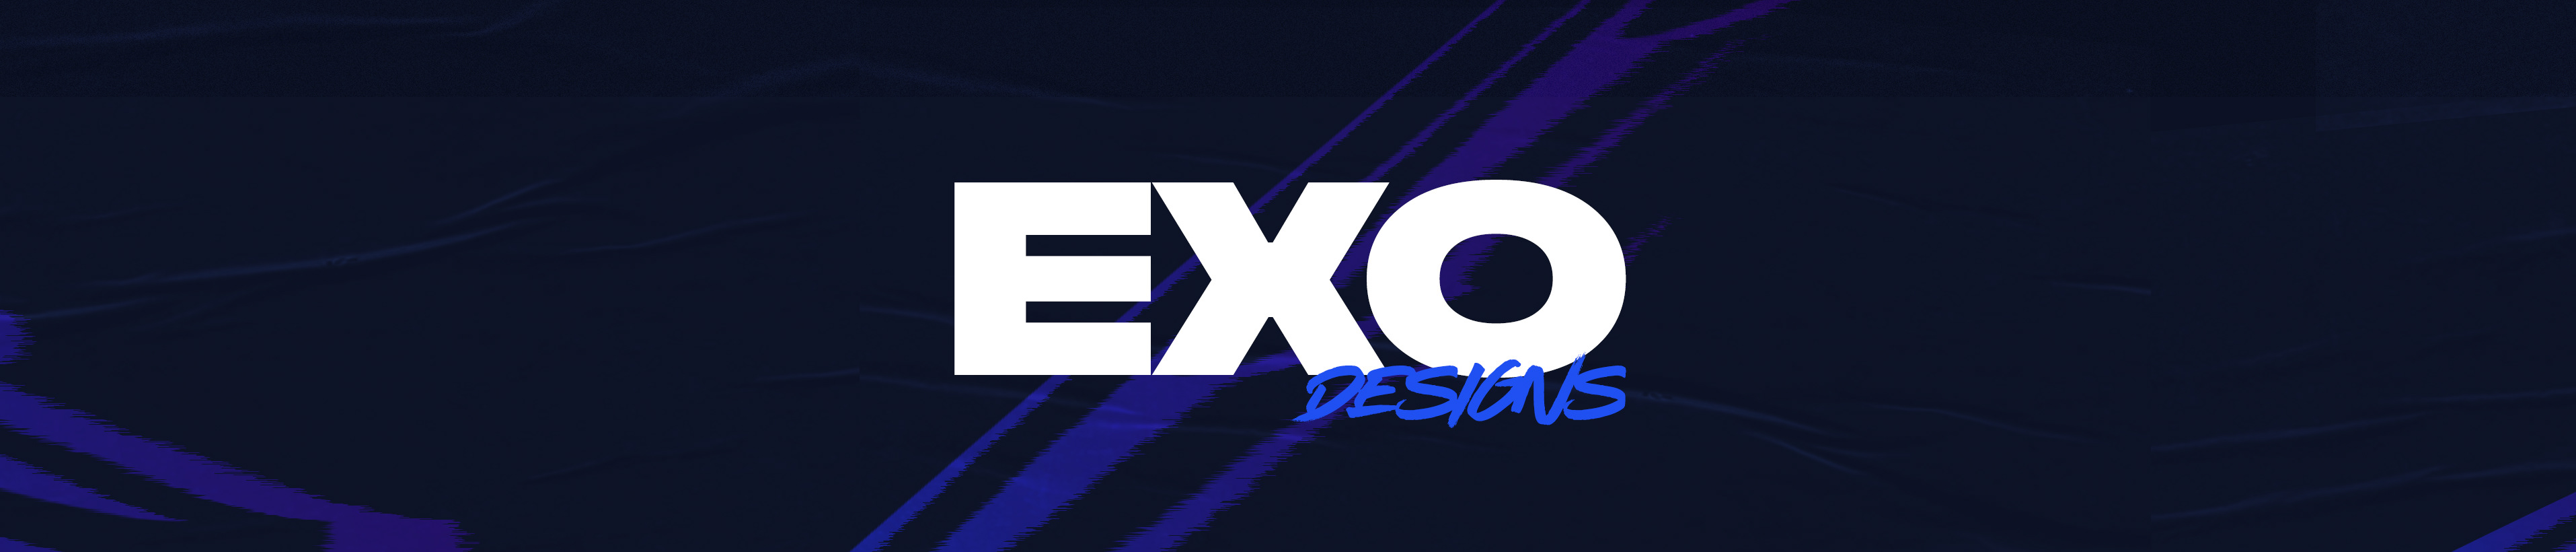 Exo Designs profil başlığı